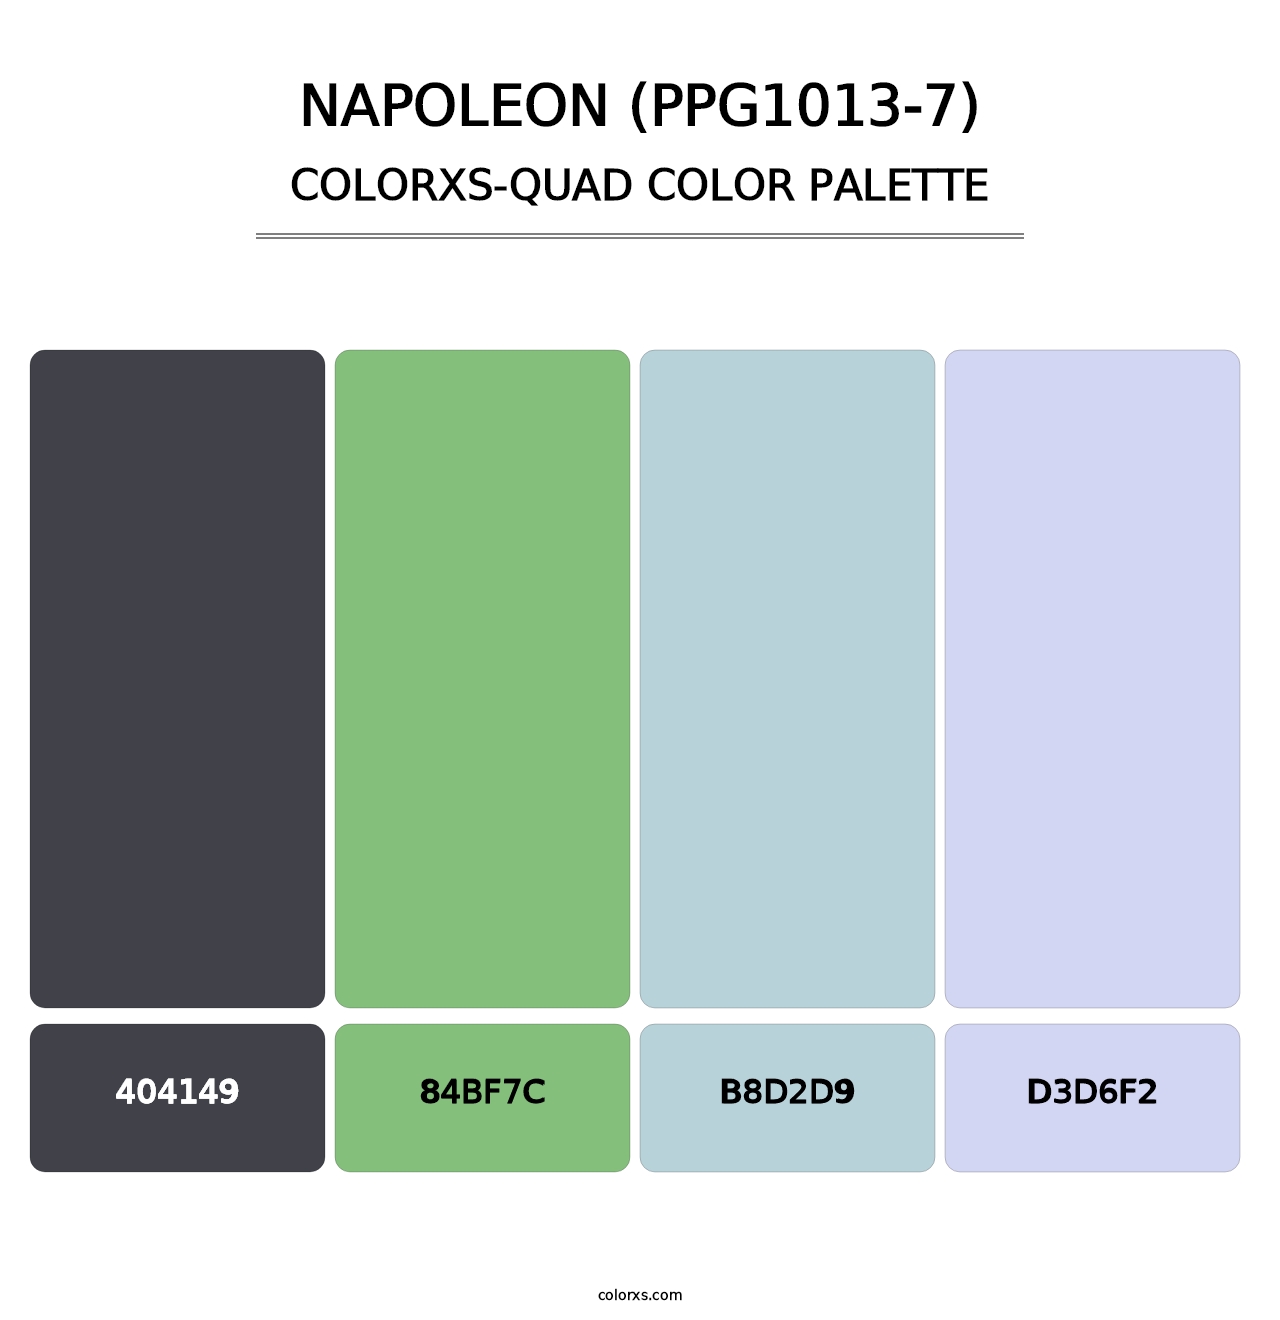 Napoleon (PPG1013-7) - Colorxs Quad Palette